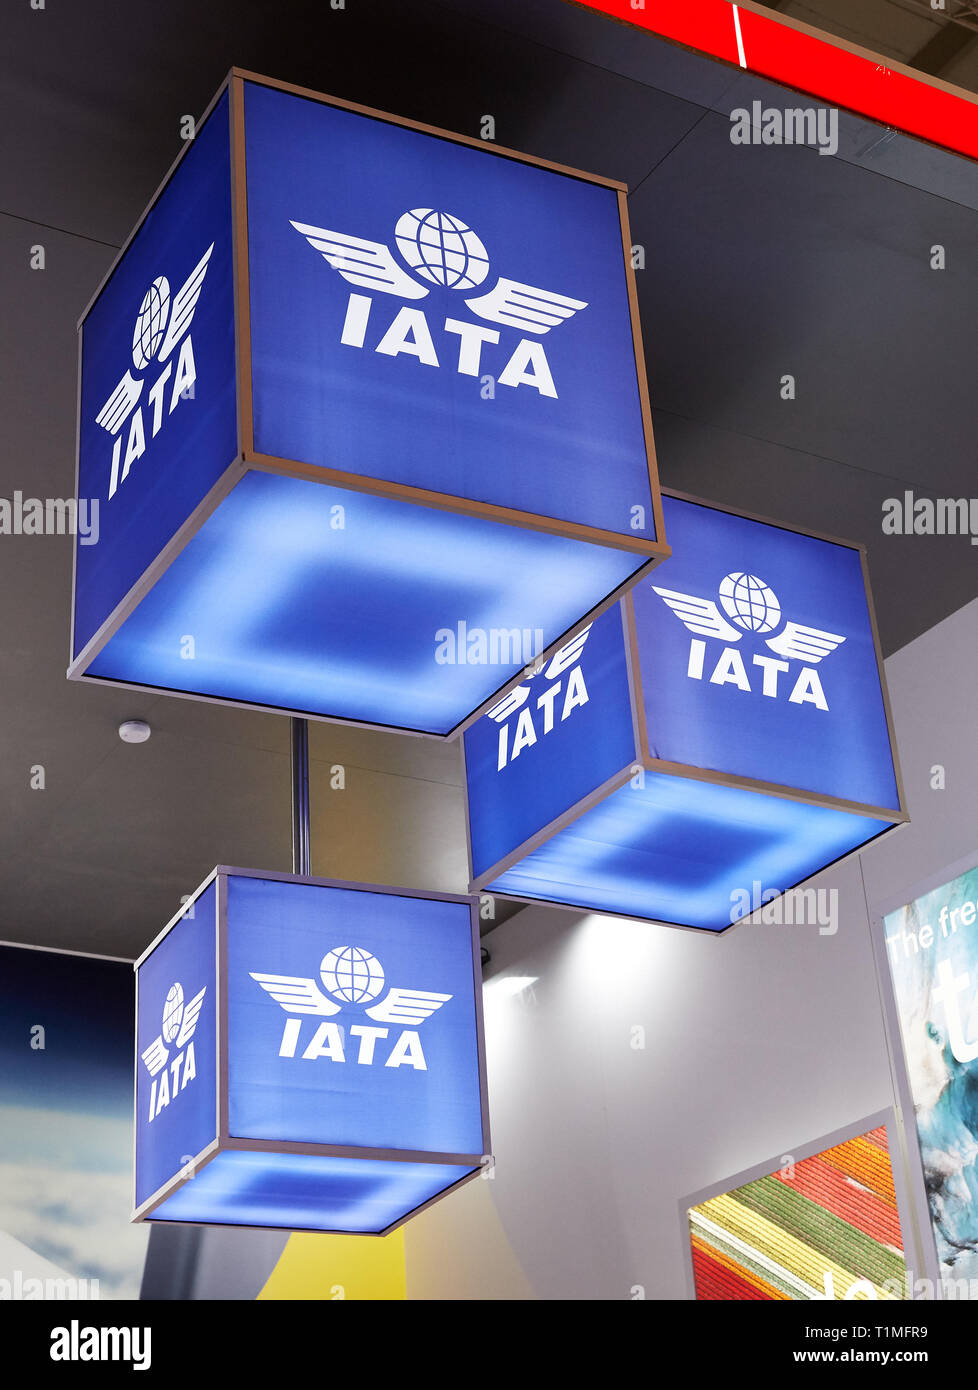 08.03.2019, Berlin, Berlin, Germania - IATA stand alla fiera ITB. Illuminato blu a cubetti con il logo dell'associazione appesi al soffitto o Foto Stock